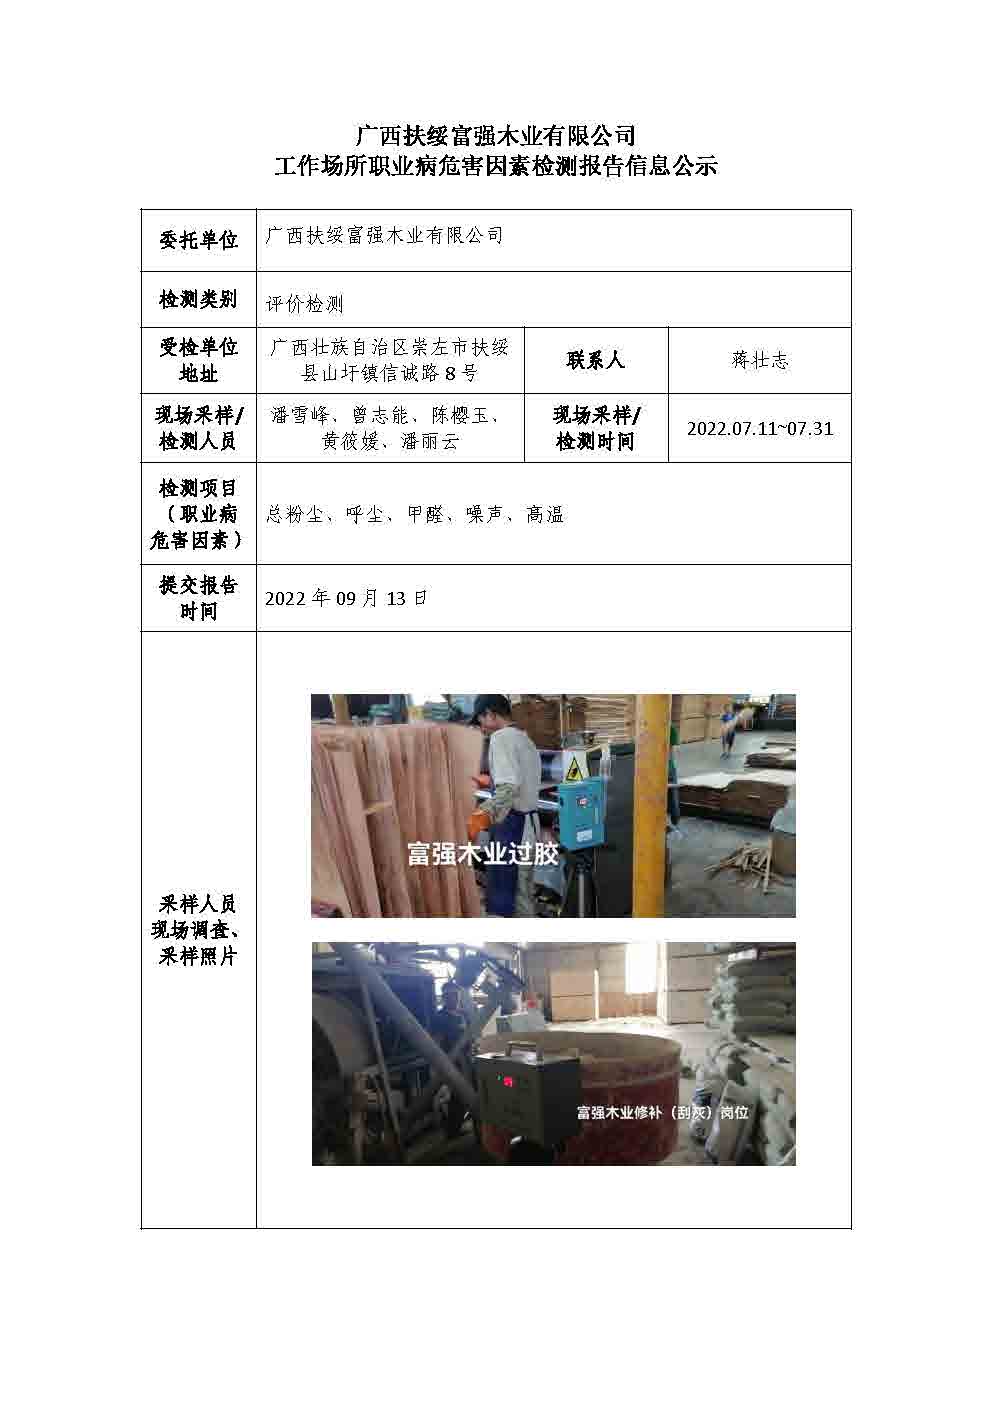 广西扶绥富强木业有限公司工作场所职业病危害因素检测报告信息公示